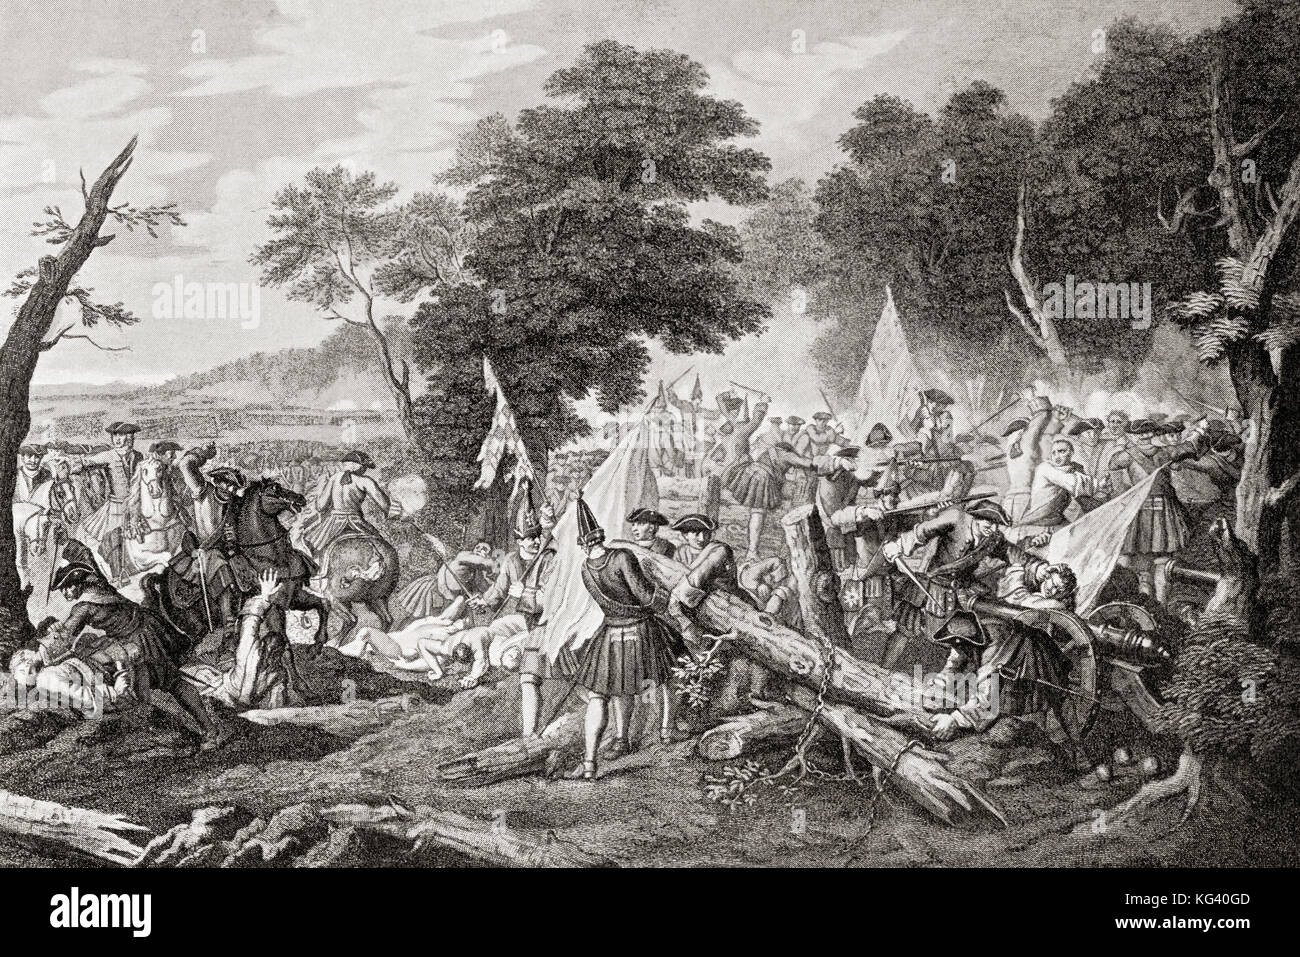 La battaglia di Malplaquet, 11 settembre 1709, una delle principali battaglie della guerra di successione spagnola. Da Hutchinson's History of the Nations, pubblicato nel 1915. Foto Stock